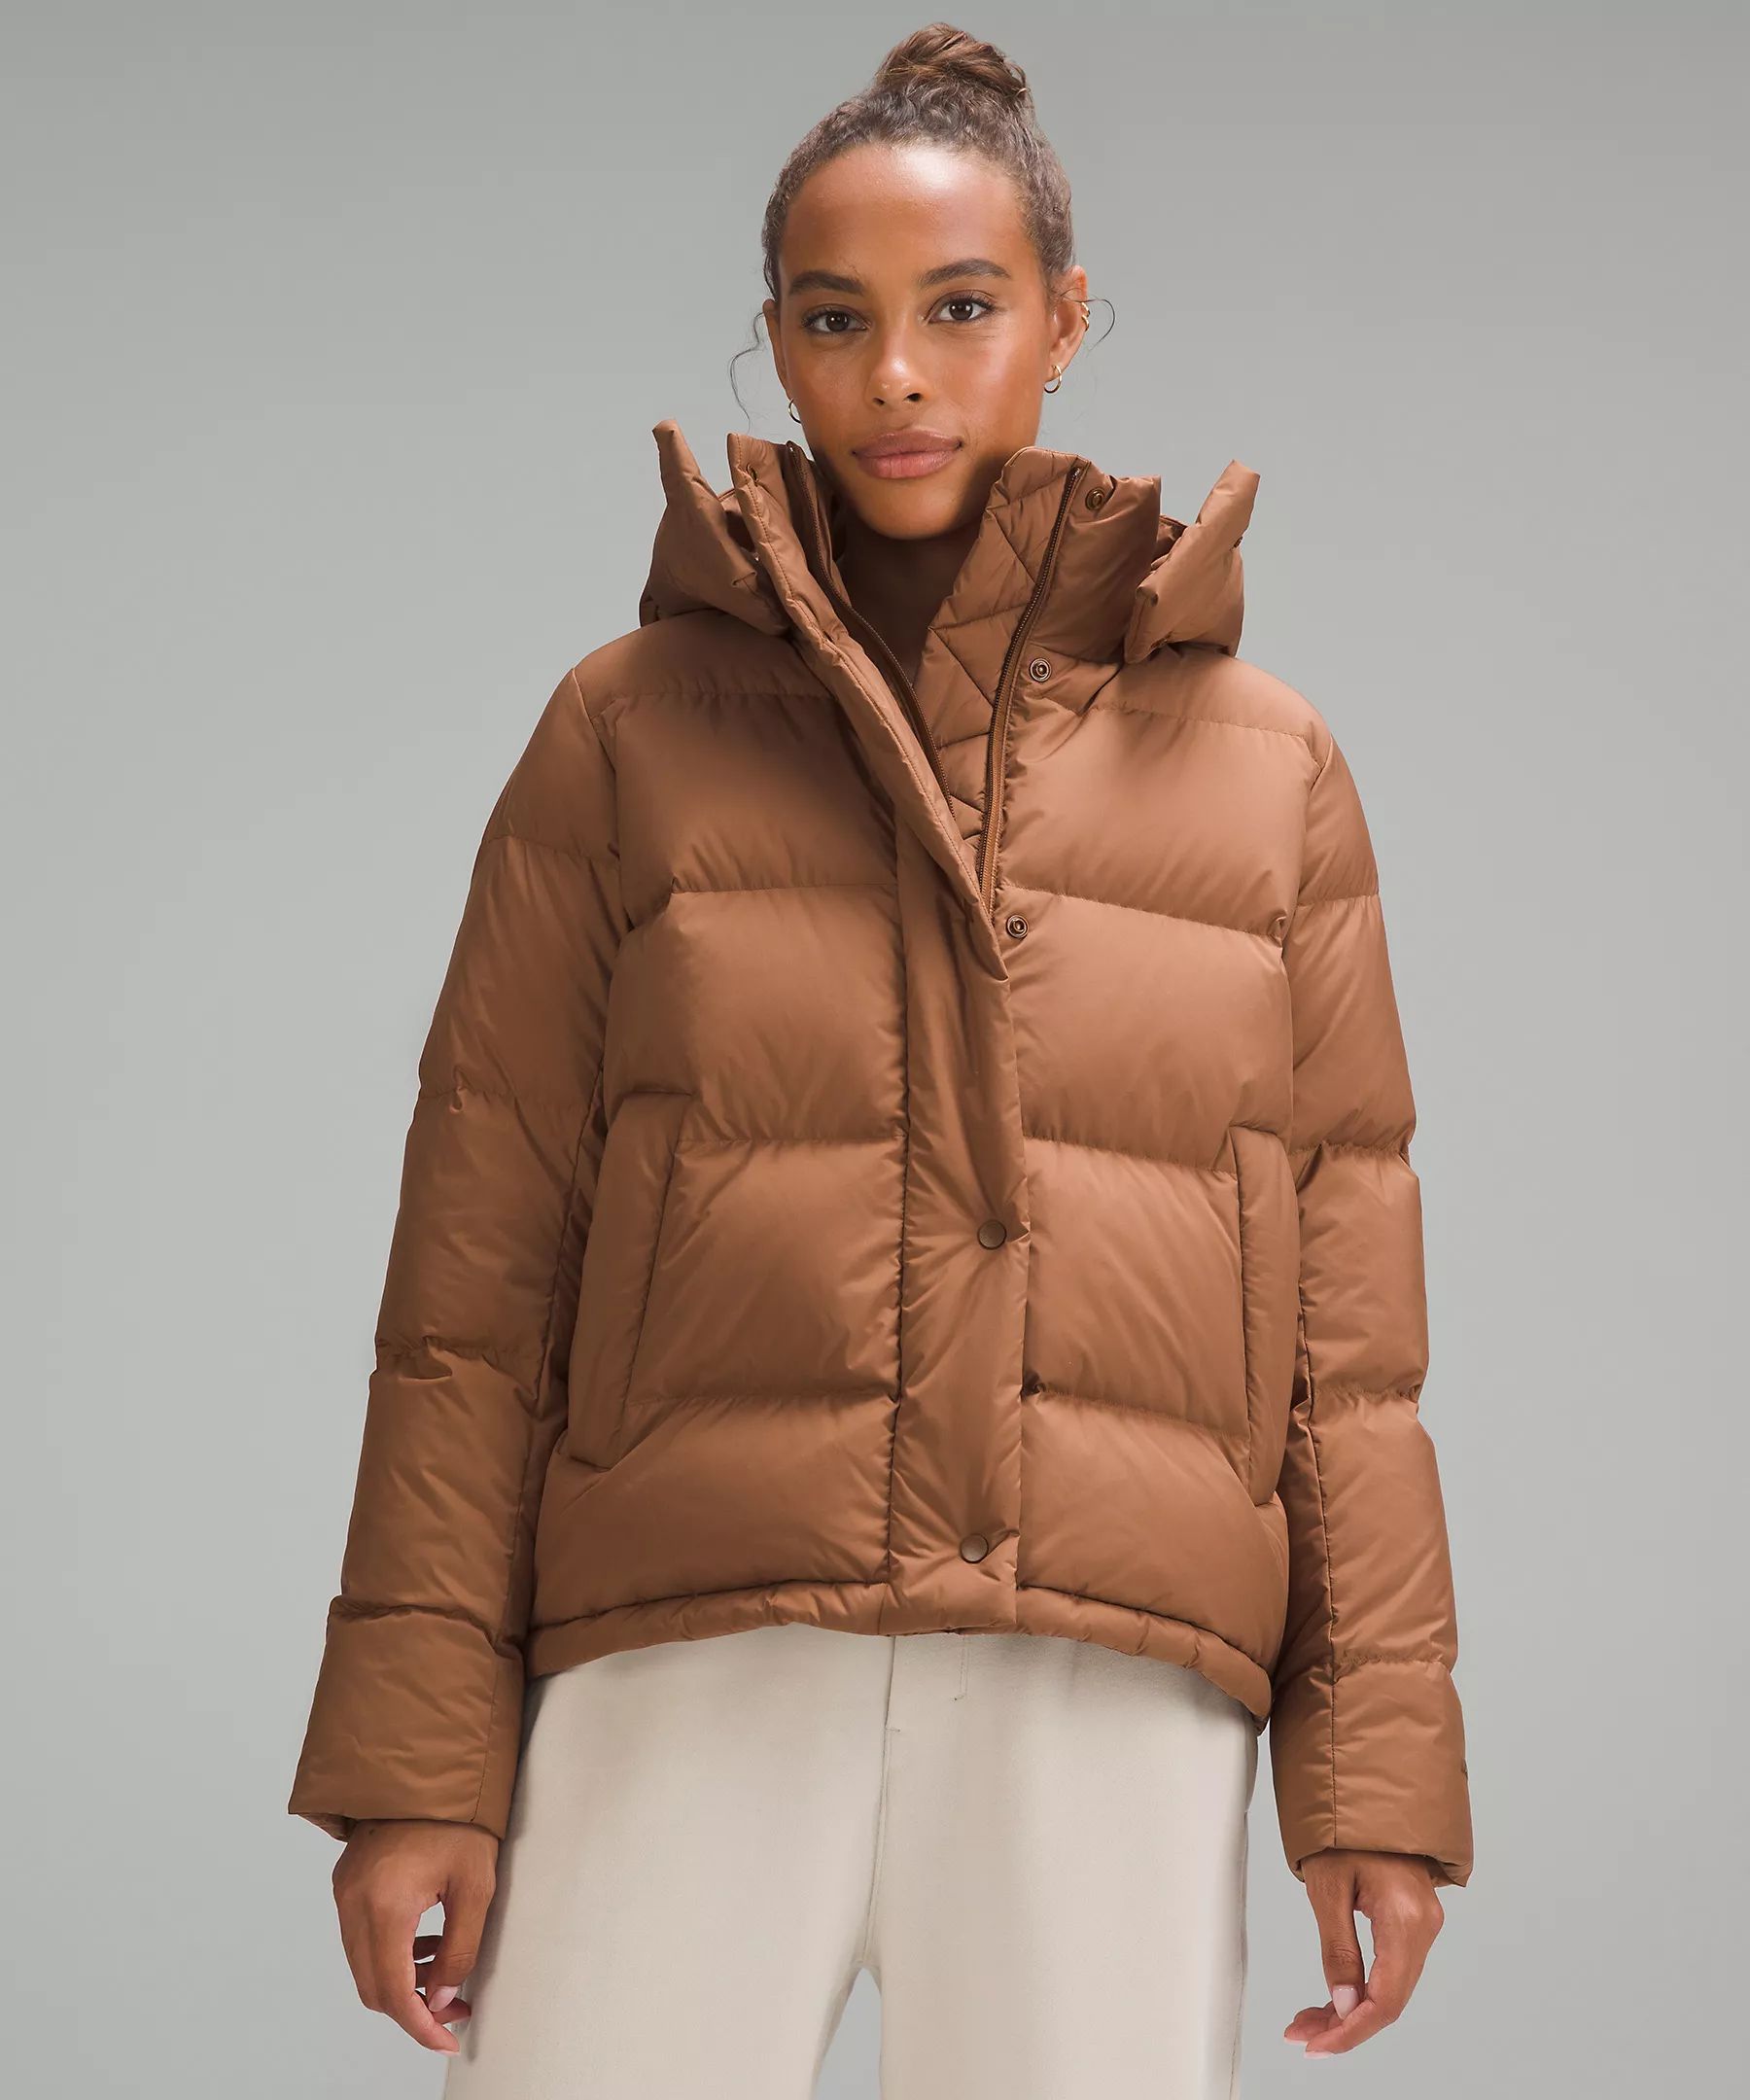 Wunder Puff Jacket | Women's Coats & Jackets | lululemon | Lululemon (US)